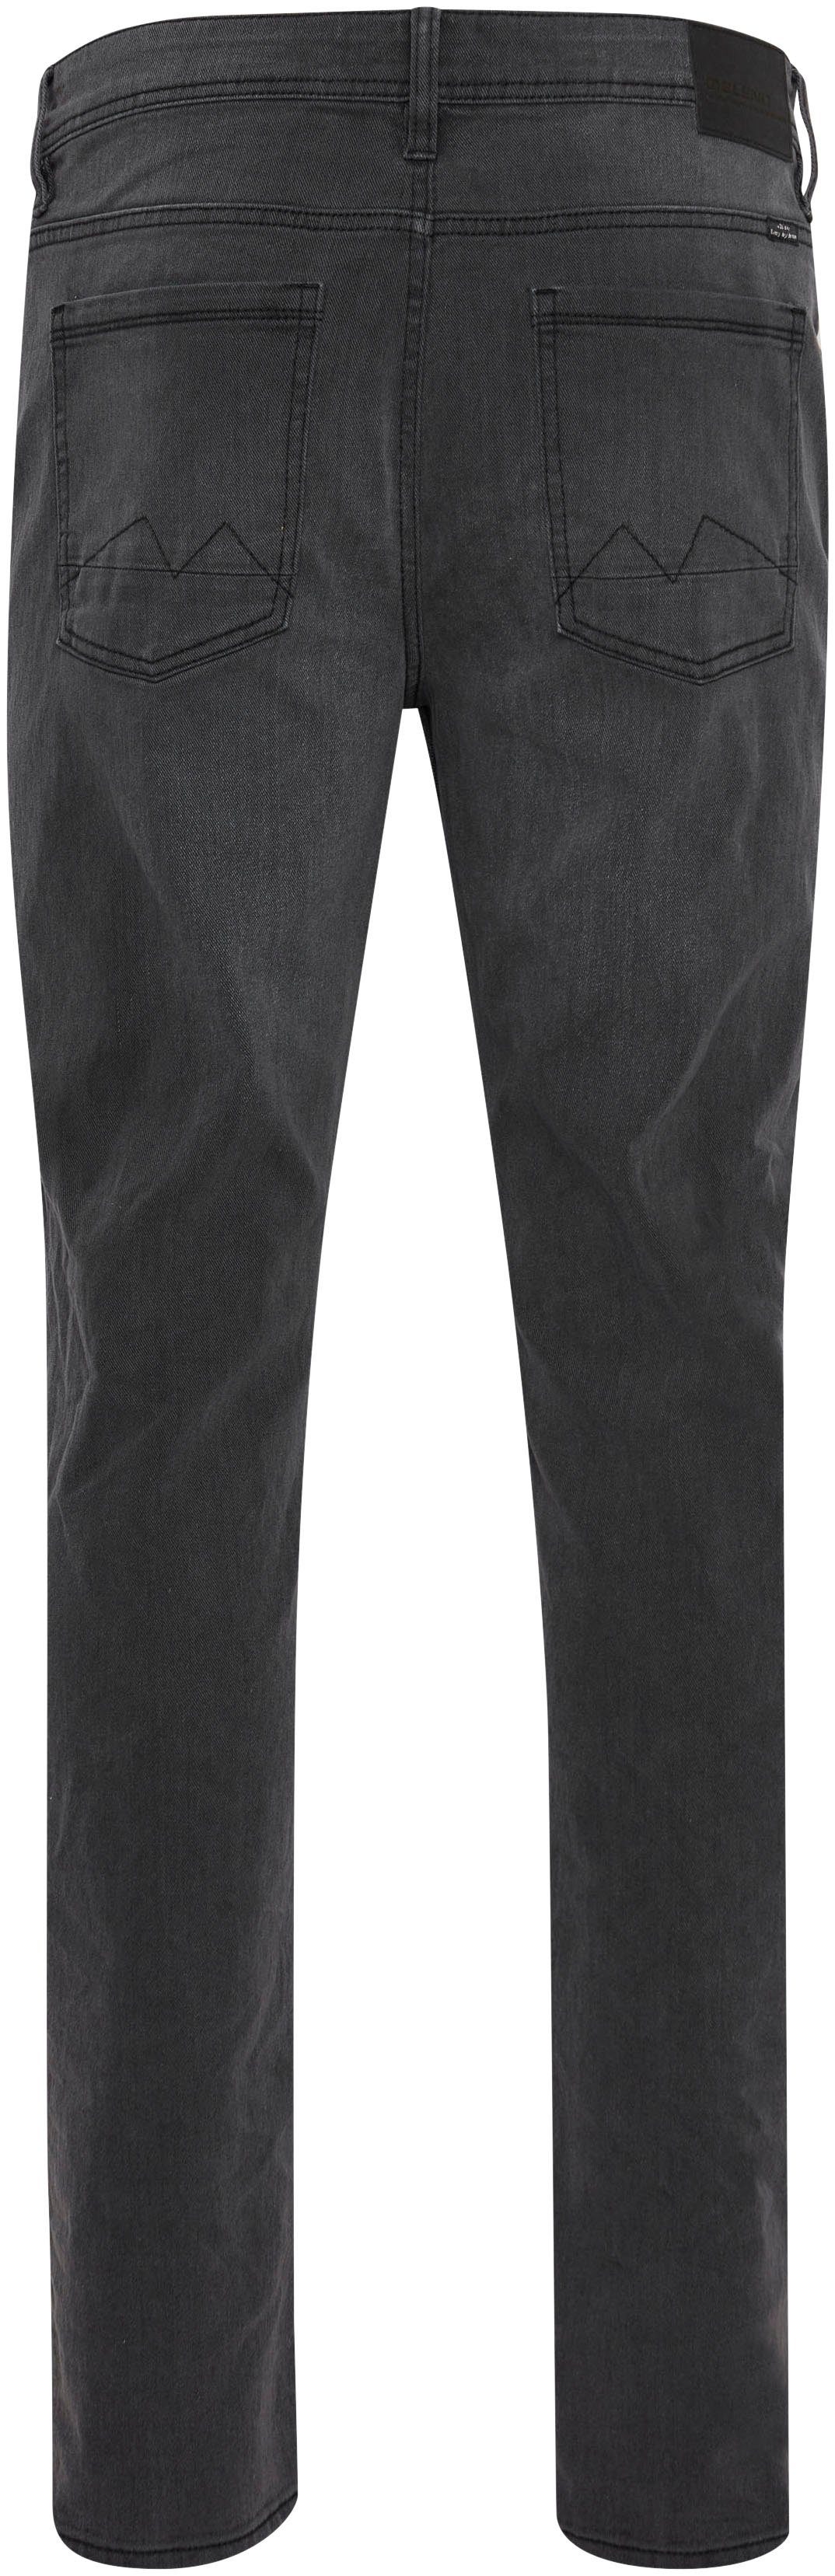 BL-Jeans grey fit Twister 5-Pocket-Jeans Blend